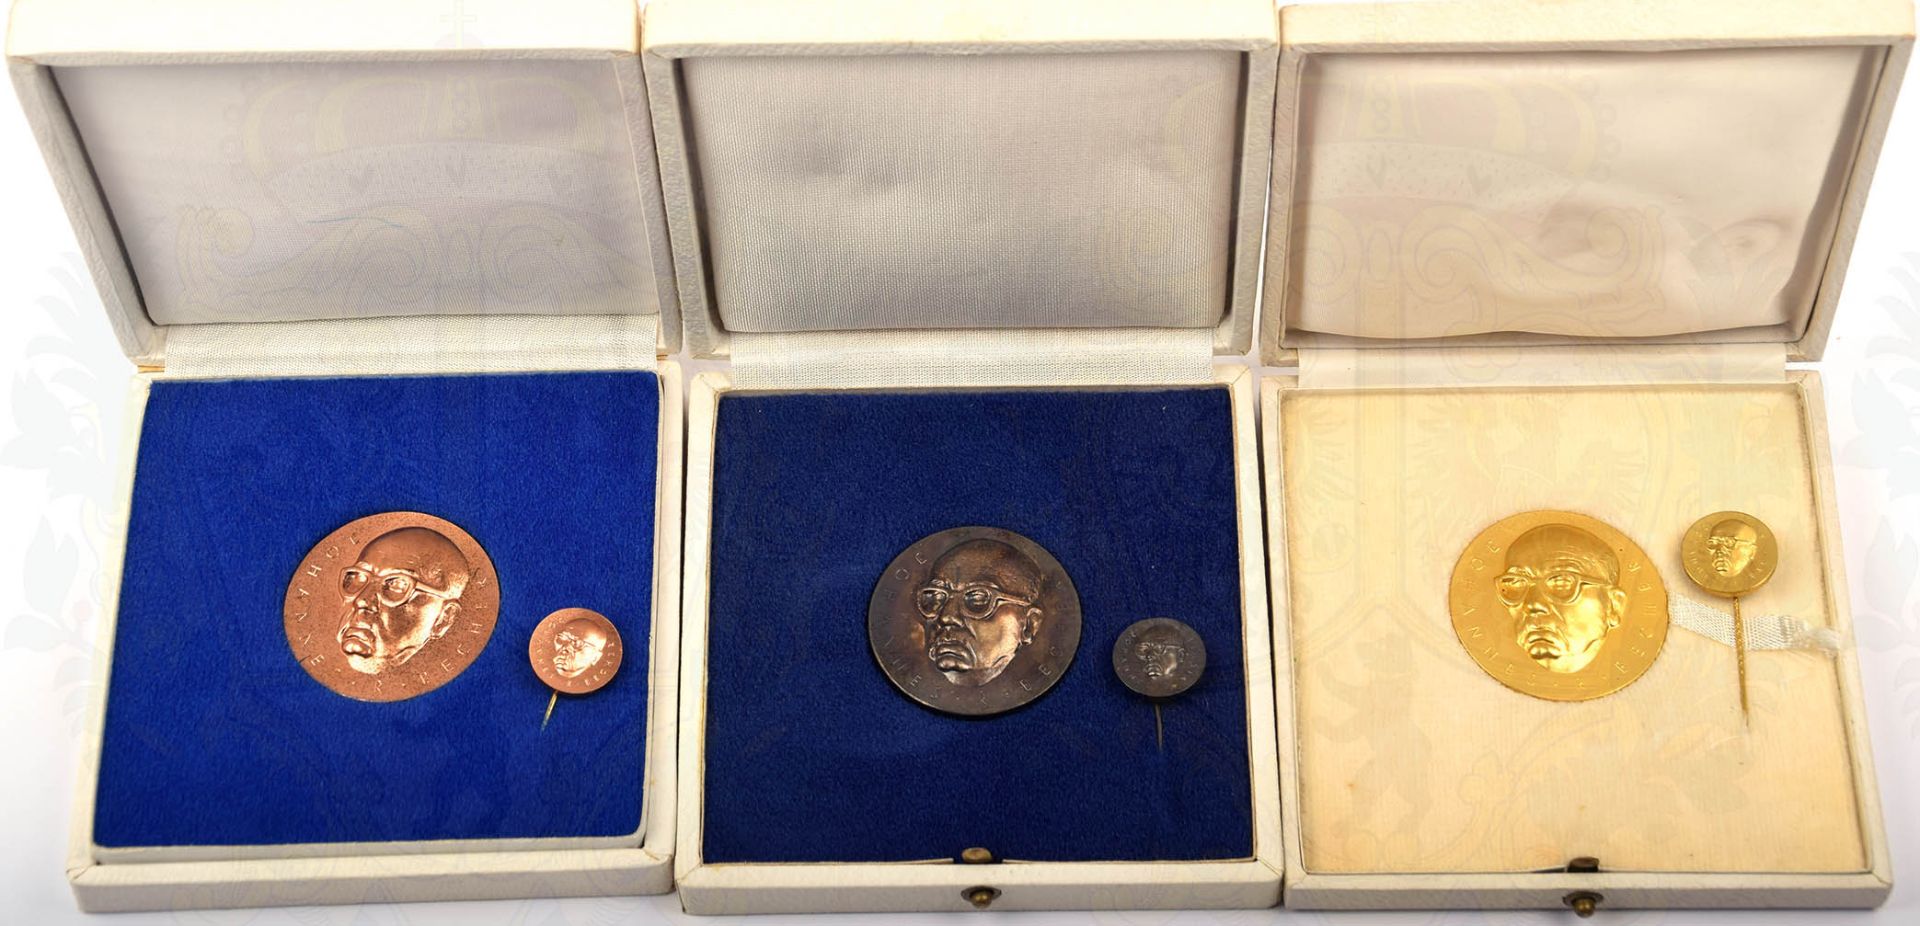 SATZ JOHANNES R. BECHER-MEDAILLE, Stufen in Bronze/Silber/Gold, Buntmetall, mit entspr. Miniatur, im - Bild 2 aus 3